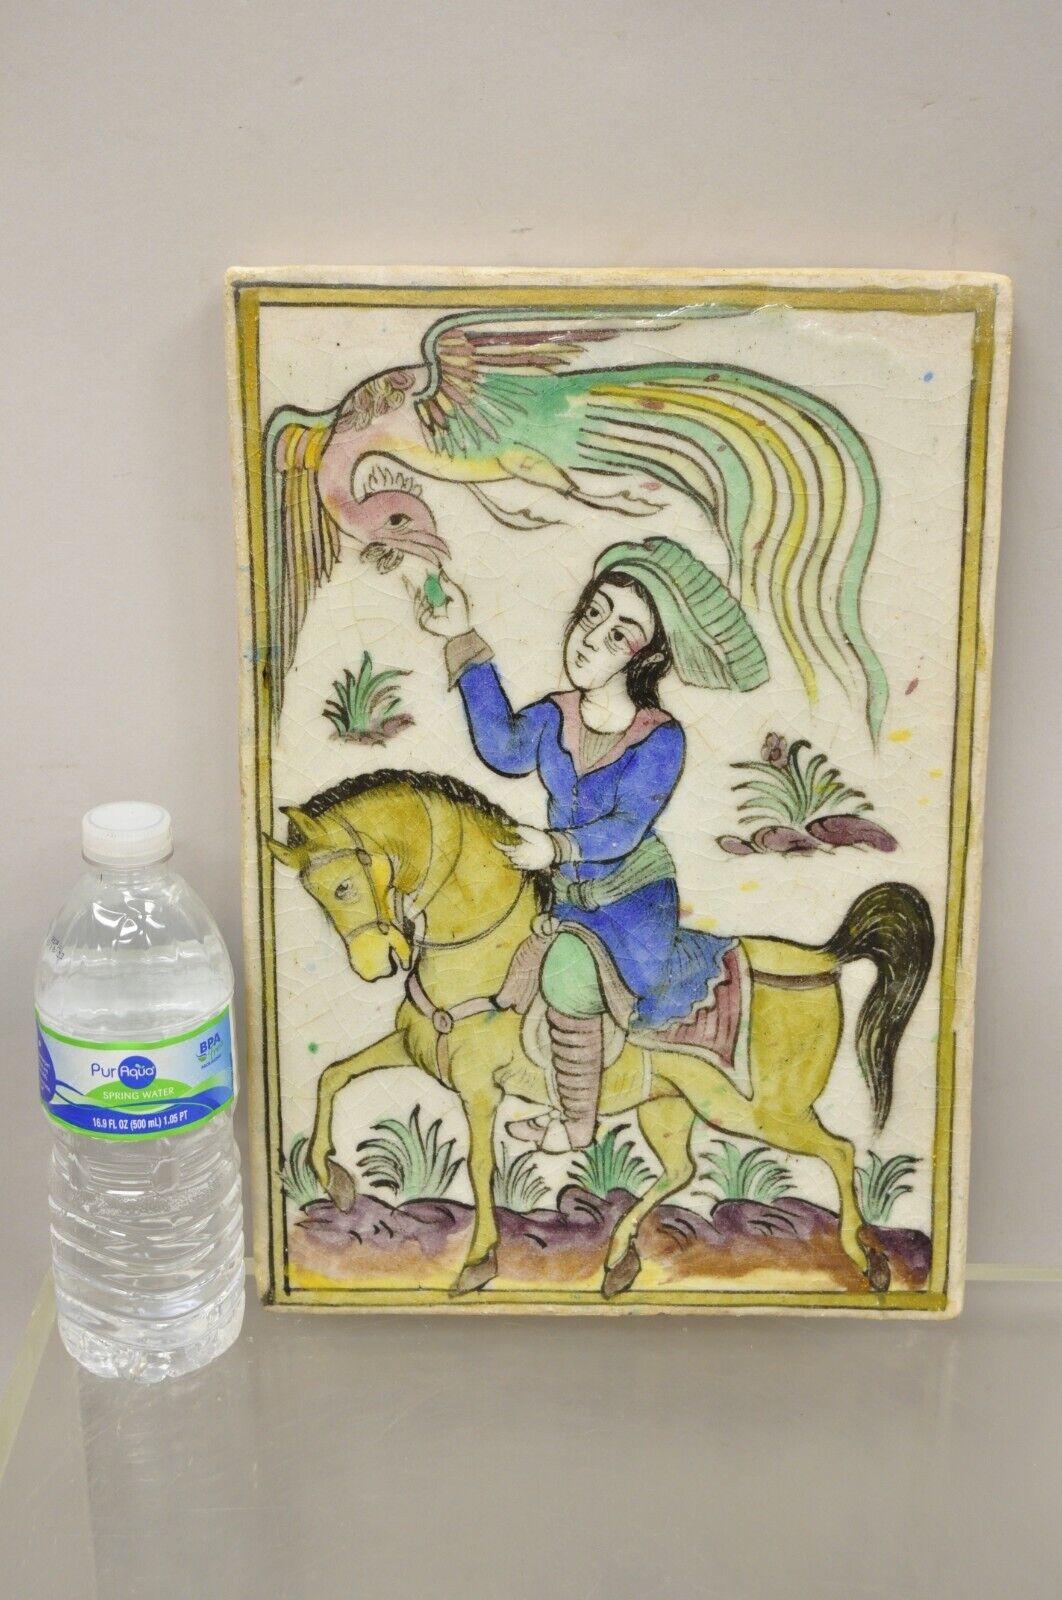 Antique Perse Iznik Qajar style grand carreau de céramique oiseau phoenix avec cheval et cavalier C1. Finition originale émaillée craquelée, construction en céramique lourde, détails très impressionnants, style et forme magnifiques. Idéal pour être